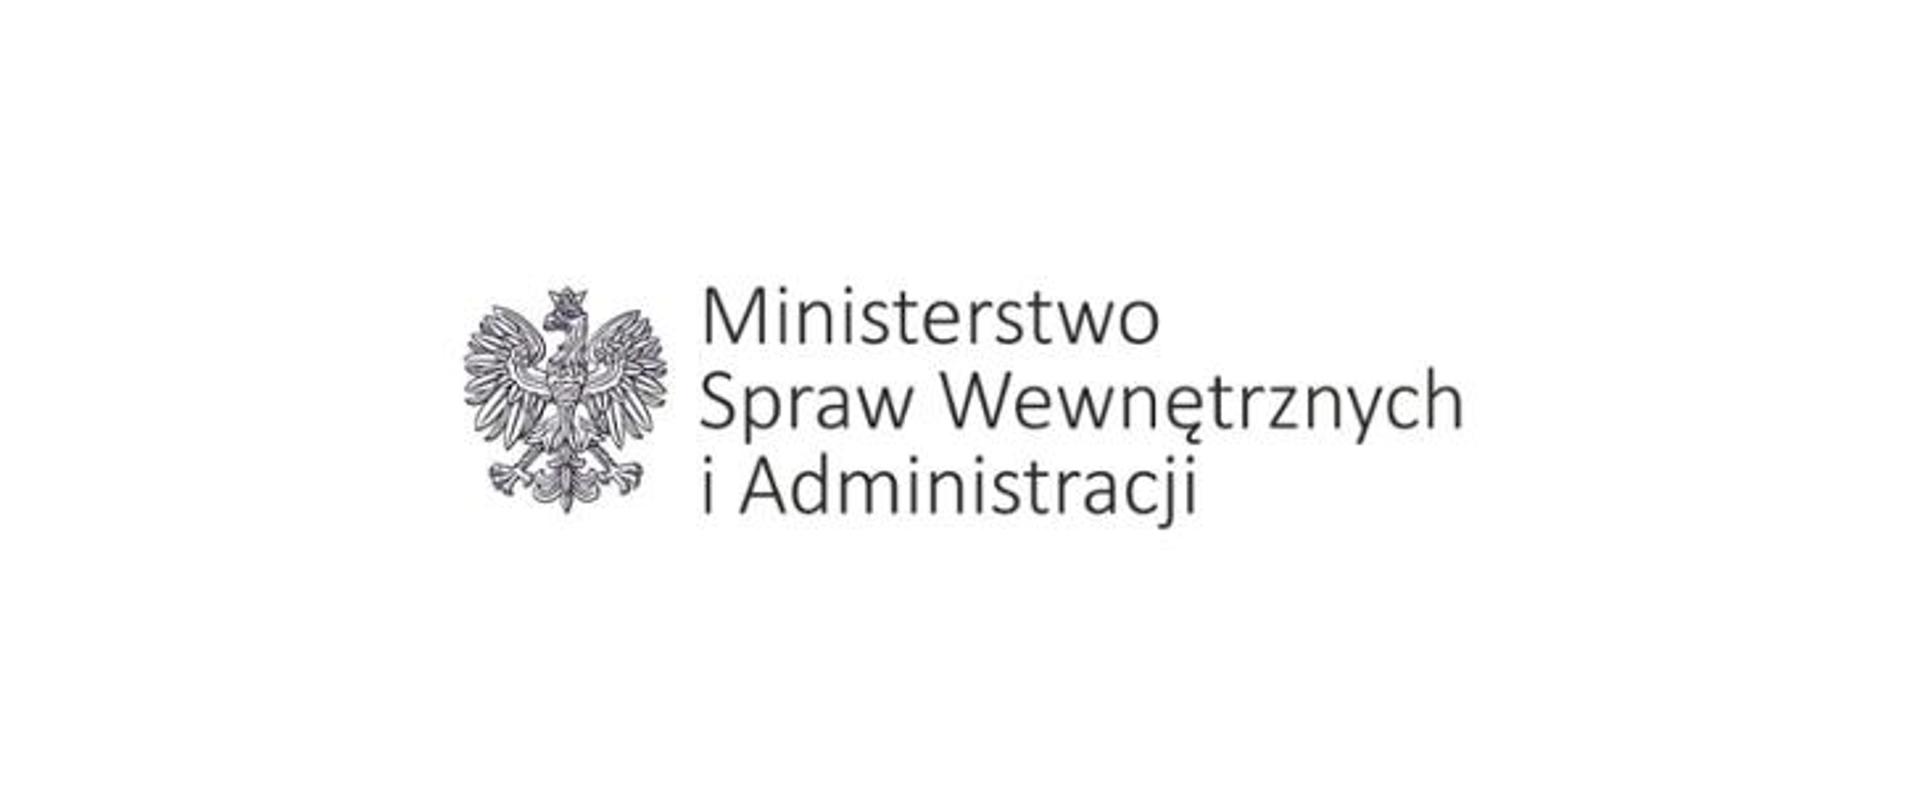 Zdjęcie przedstawia Logo MSWiA na białym tle